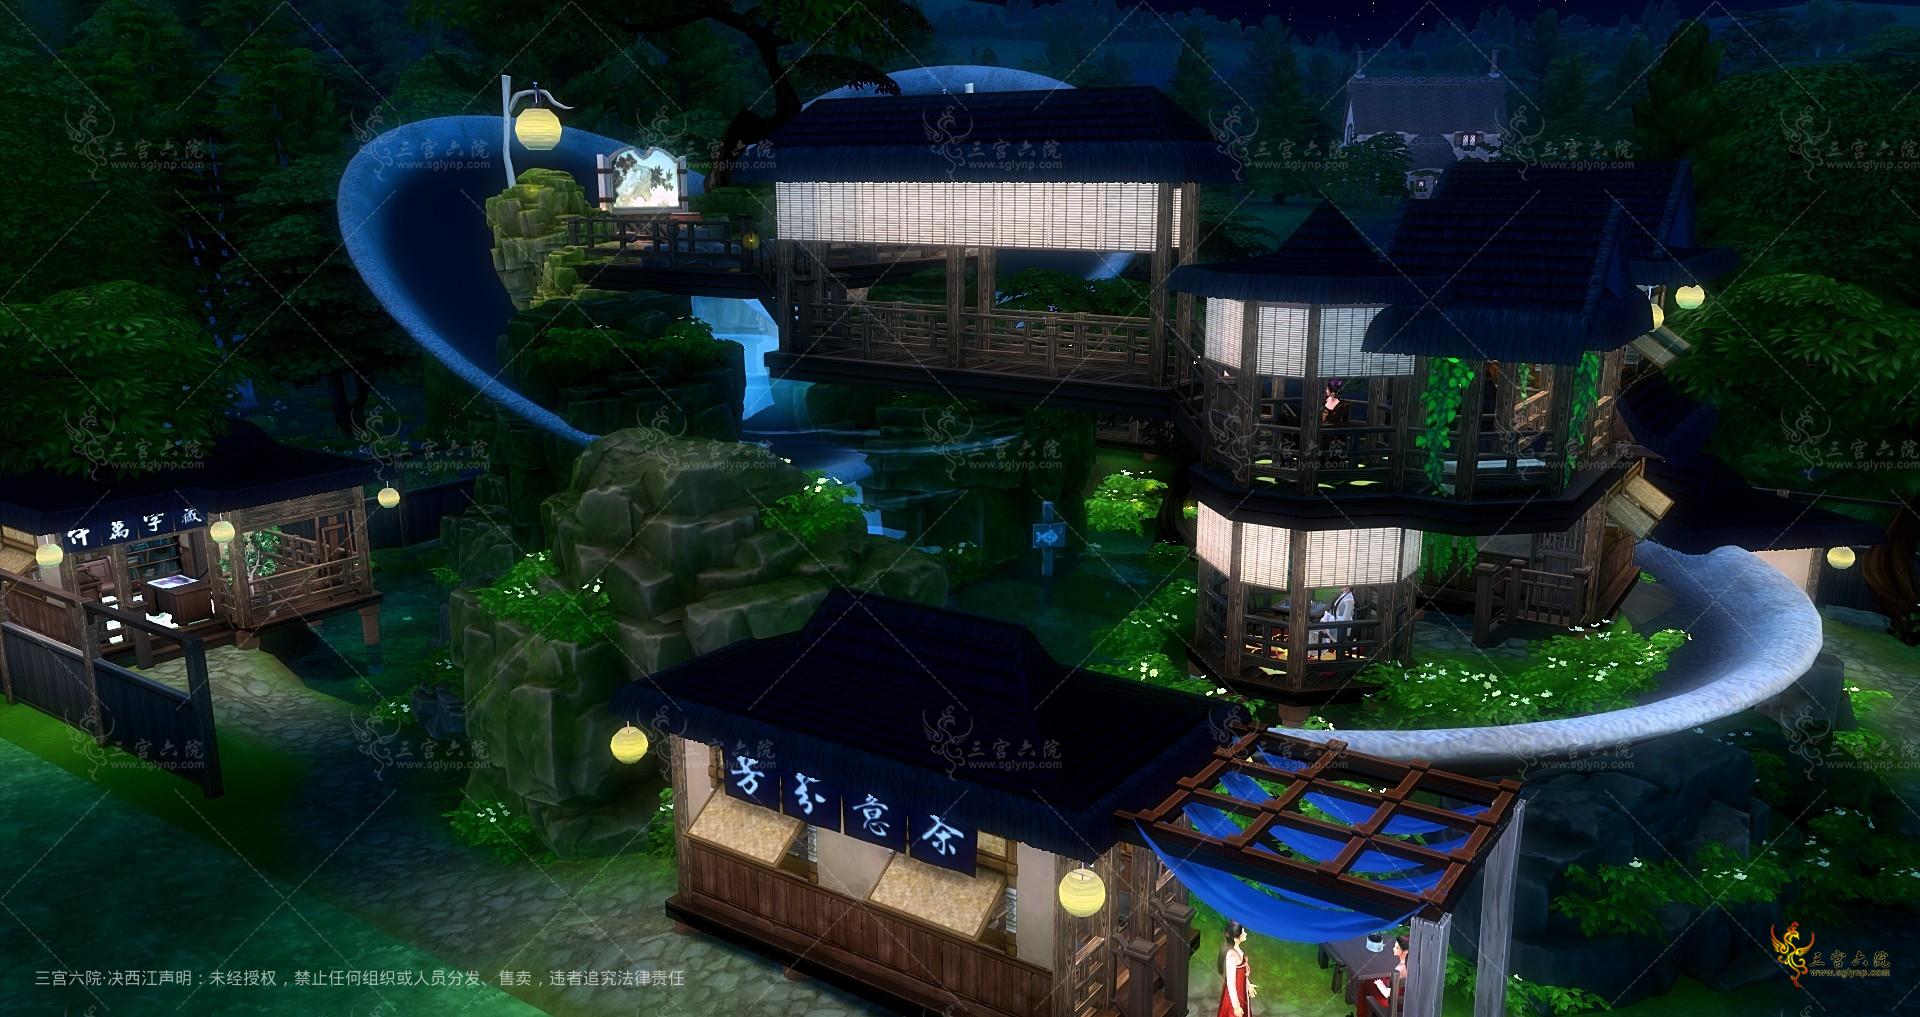 Sims 4 Screenshot 2022.07.28 - 23.48.39.71.png